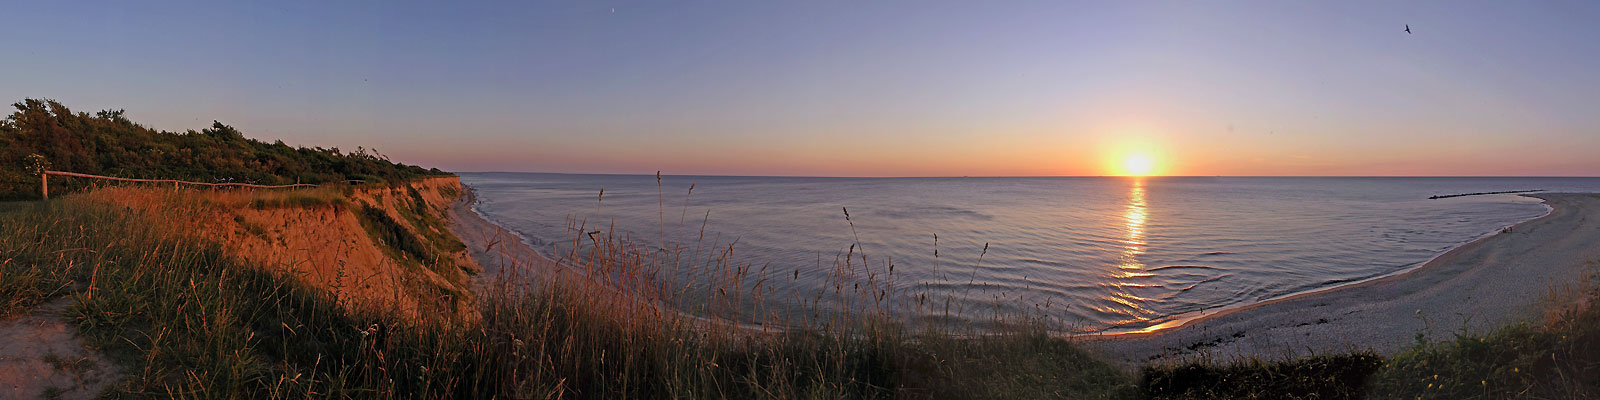 Panorama: Ahrenshoop Sonnenuntergang Steilküste - Motivnummer: fdz-hoh-03